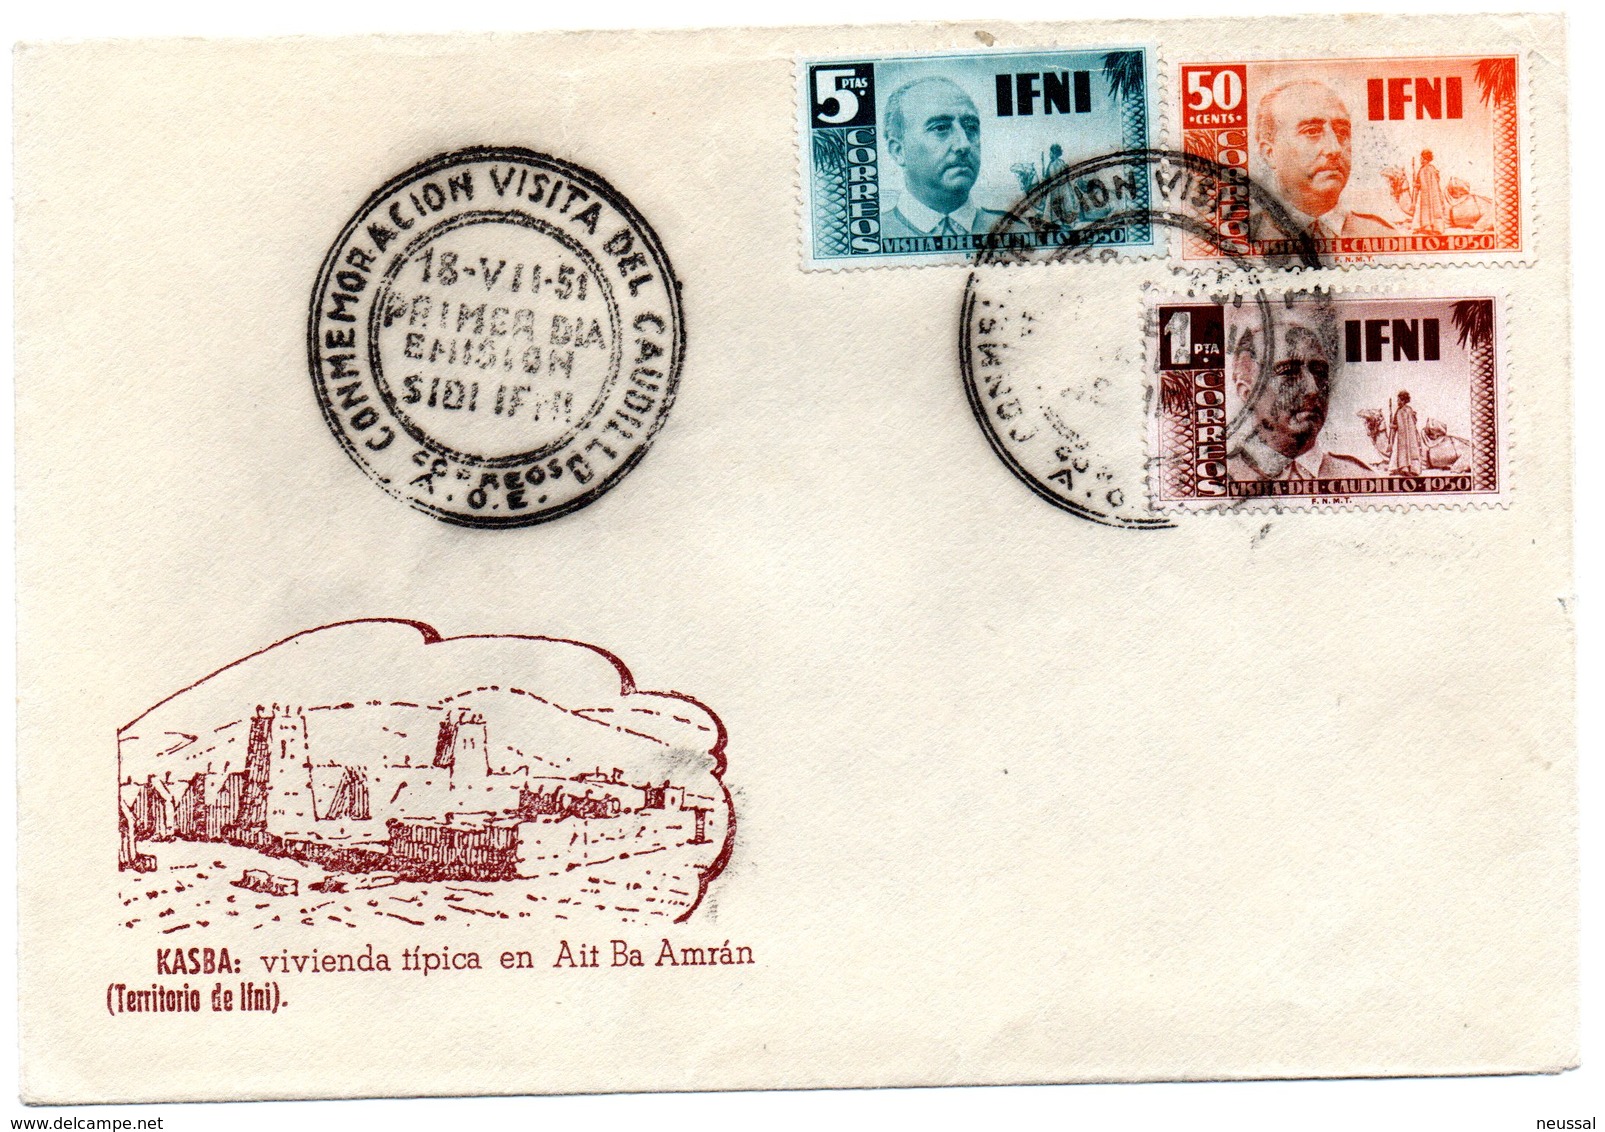 Carta Con Matasellos  Commemorativo Visita Del Caudillo Sidi-ifni. 1951 - Ifni